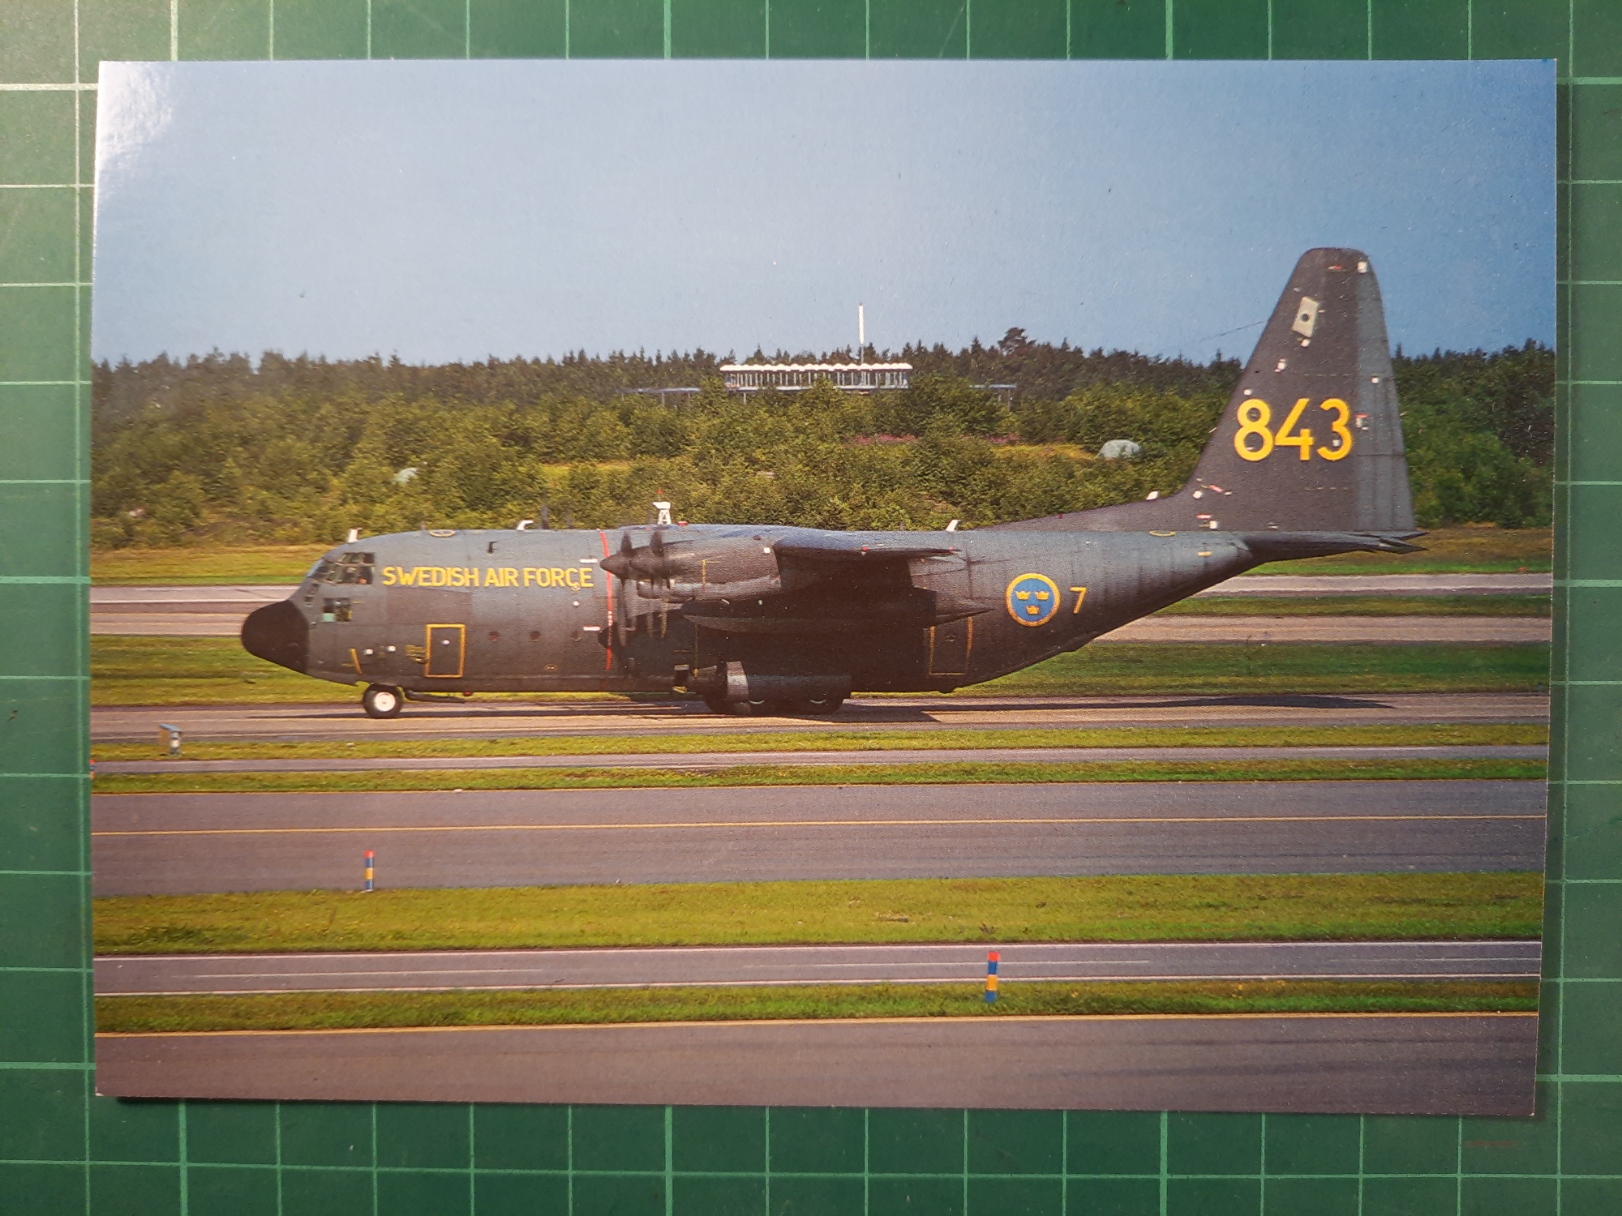 Swedish air force Tp84 Hercules C-130